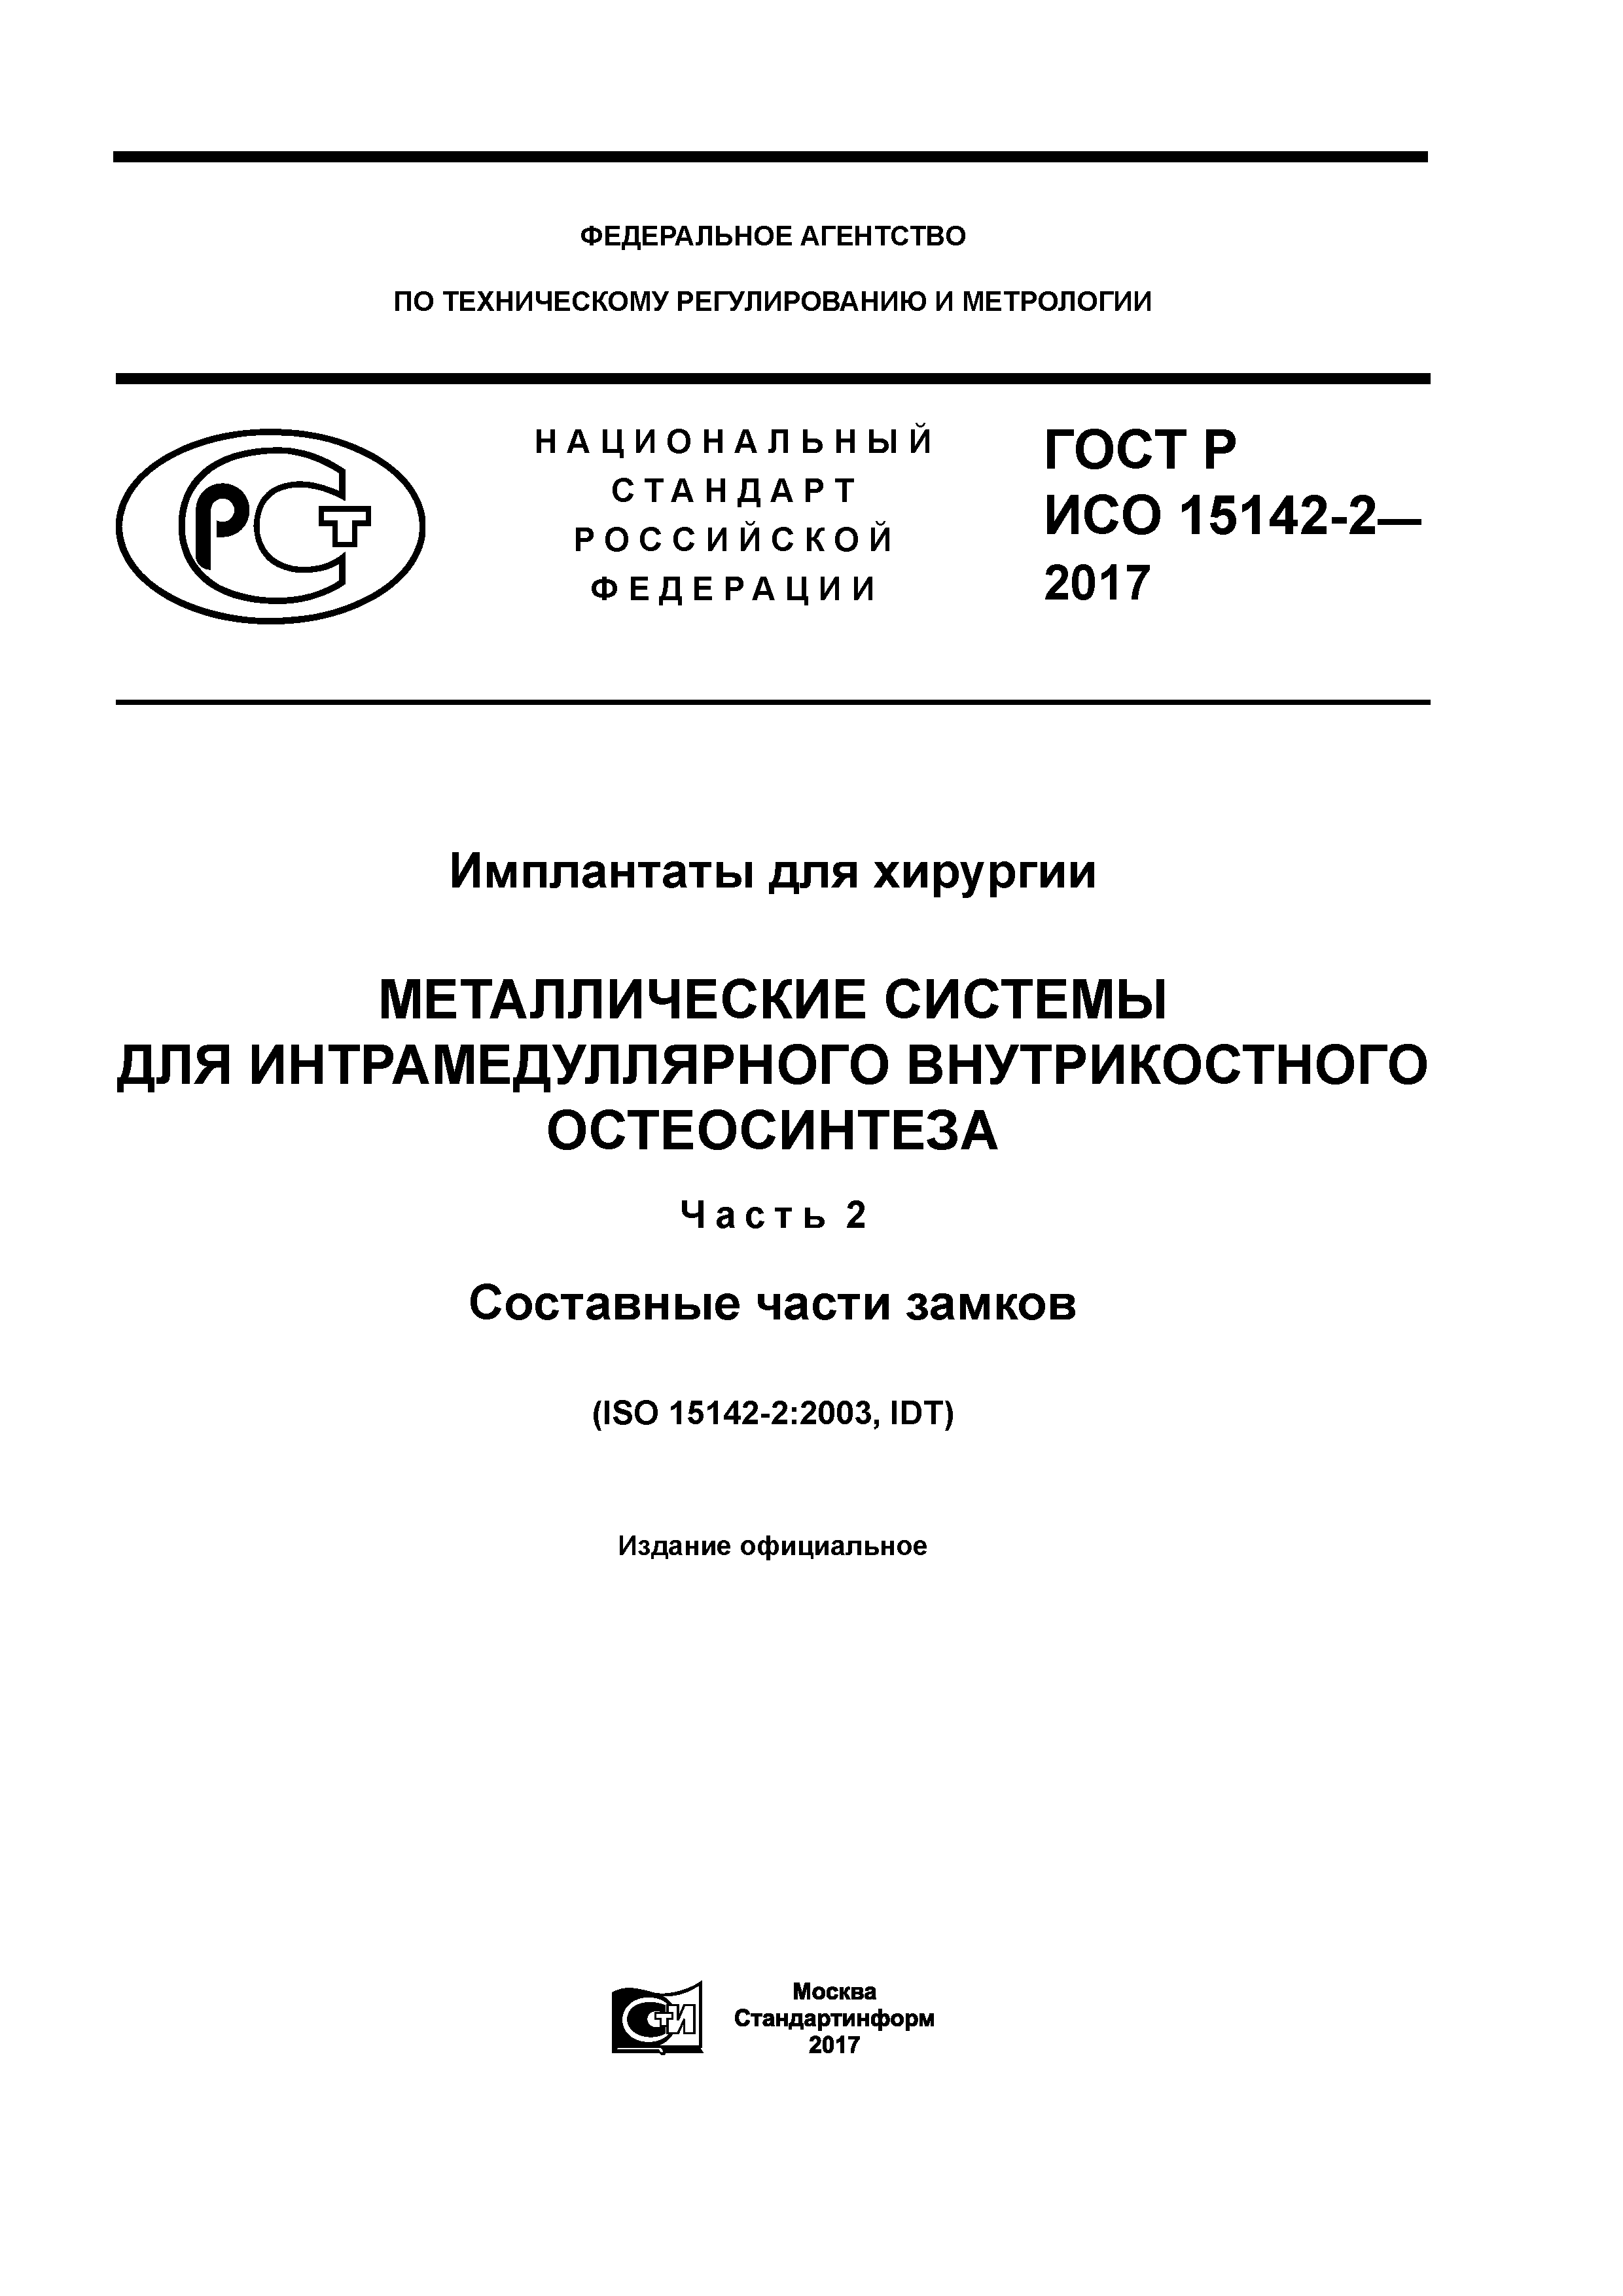 ГОСТ Р ИСО 15142-2-2017